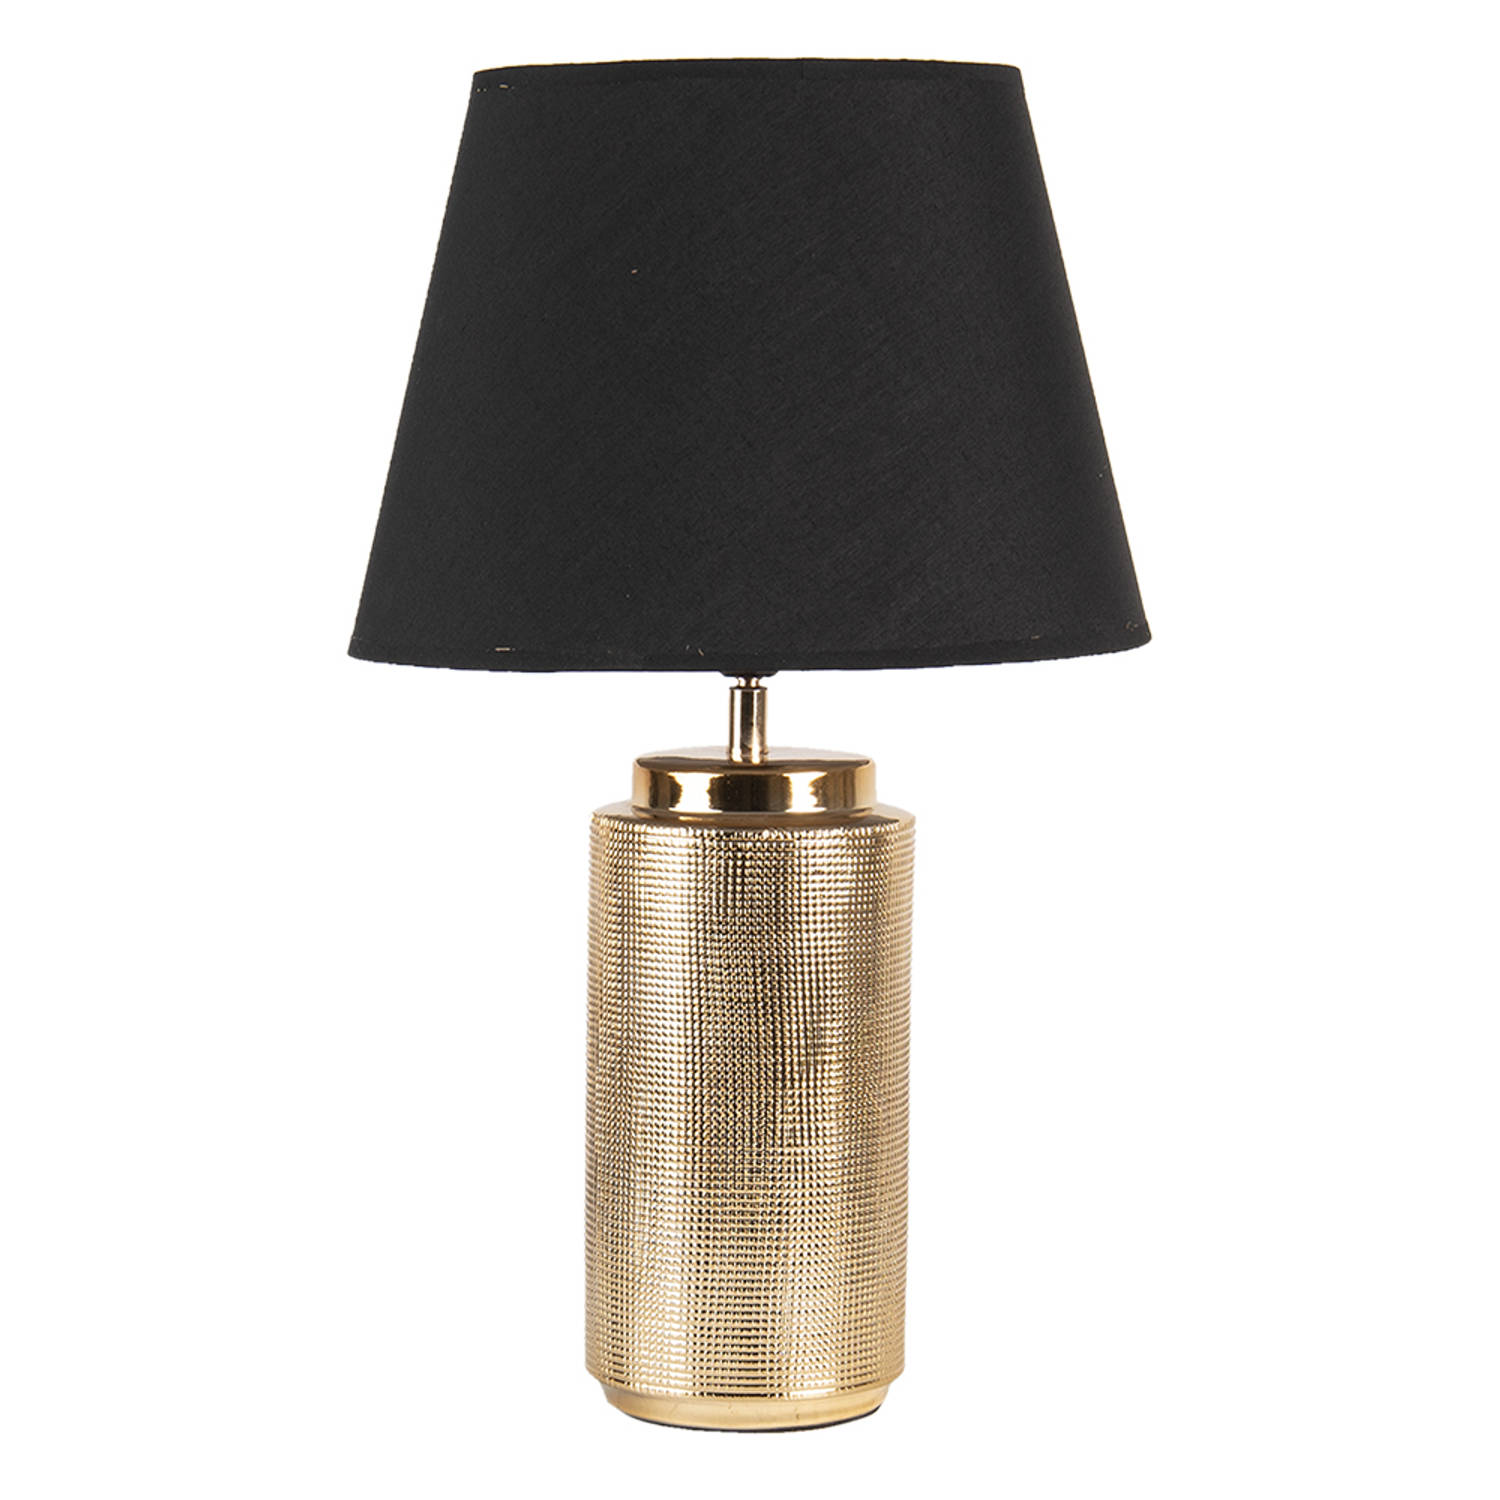 HAES DECO - Tafellamp - Modern Chic - Stijlvolle Lamp, formaat Ø 30x50 cm - Zwart / Goudkleurig Polyresin - Bureaulamp, Sfeerlamp, Nachtlampje